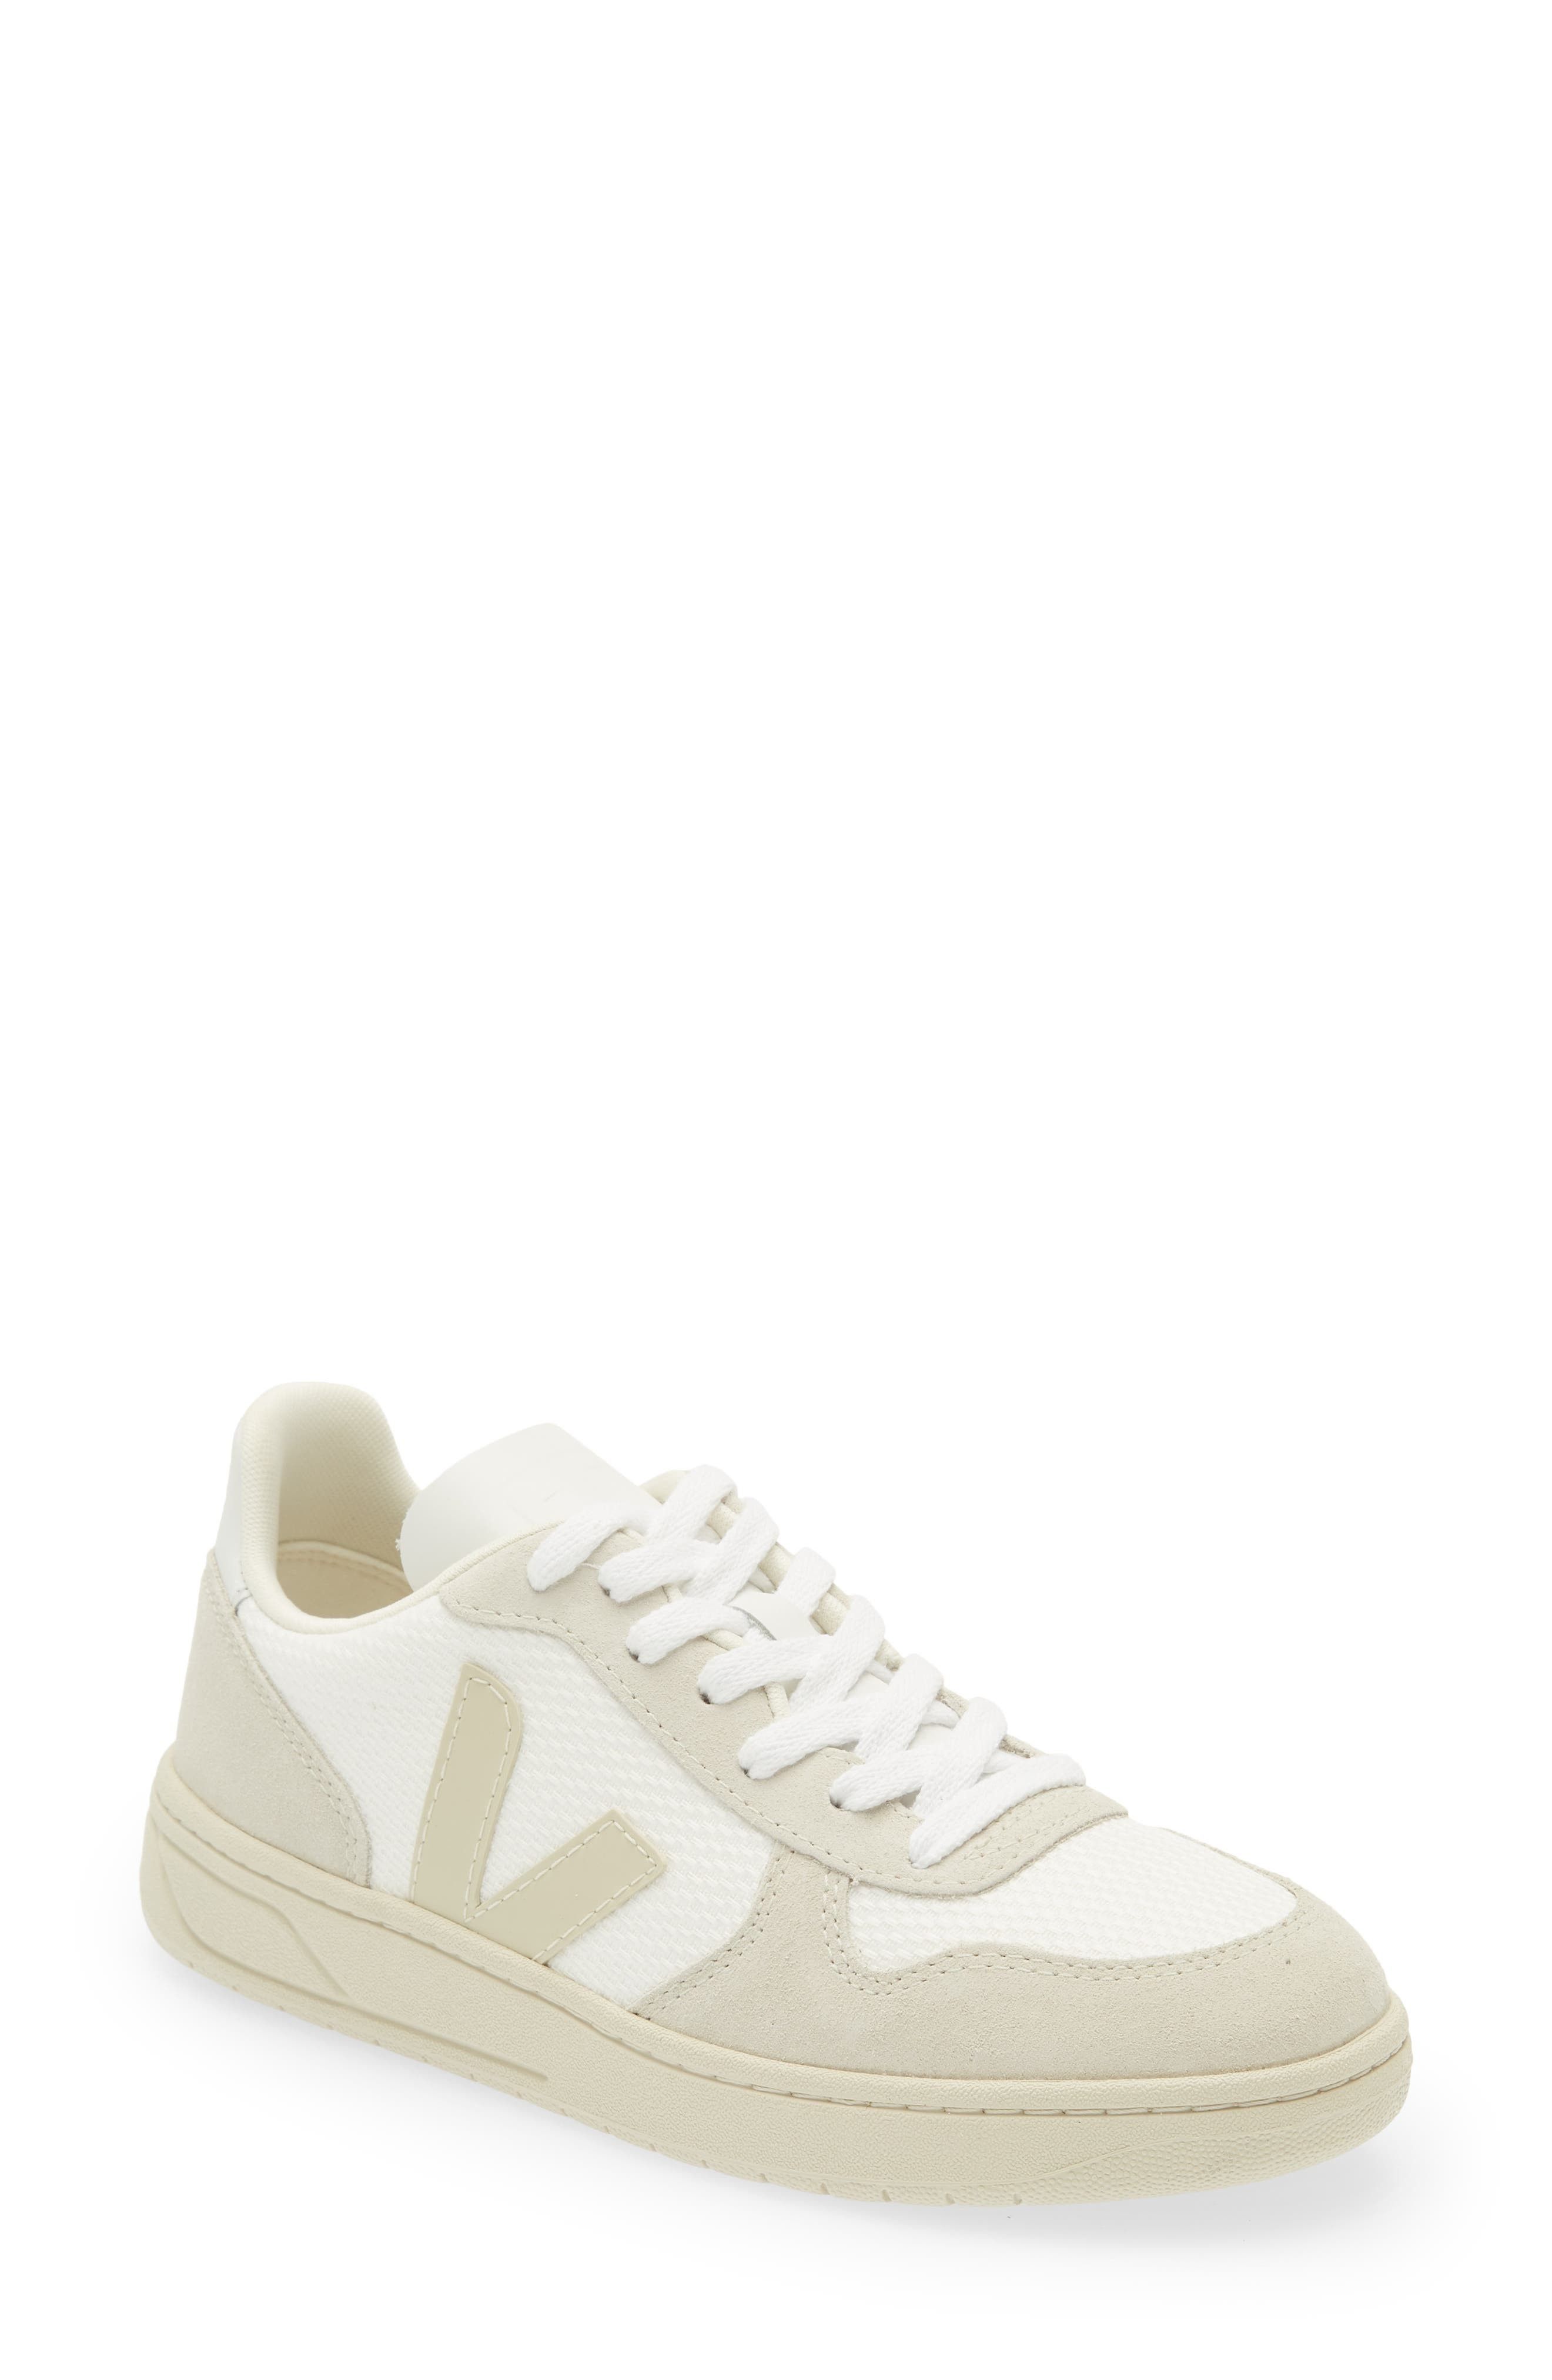 Veja V-10 Sneaker in White Natural Pierre at Nordstrom, Size 40Eu | Nordstrom